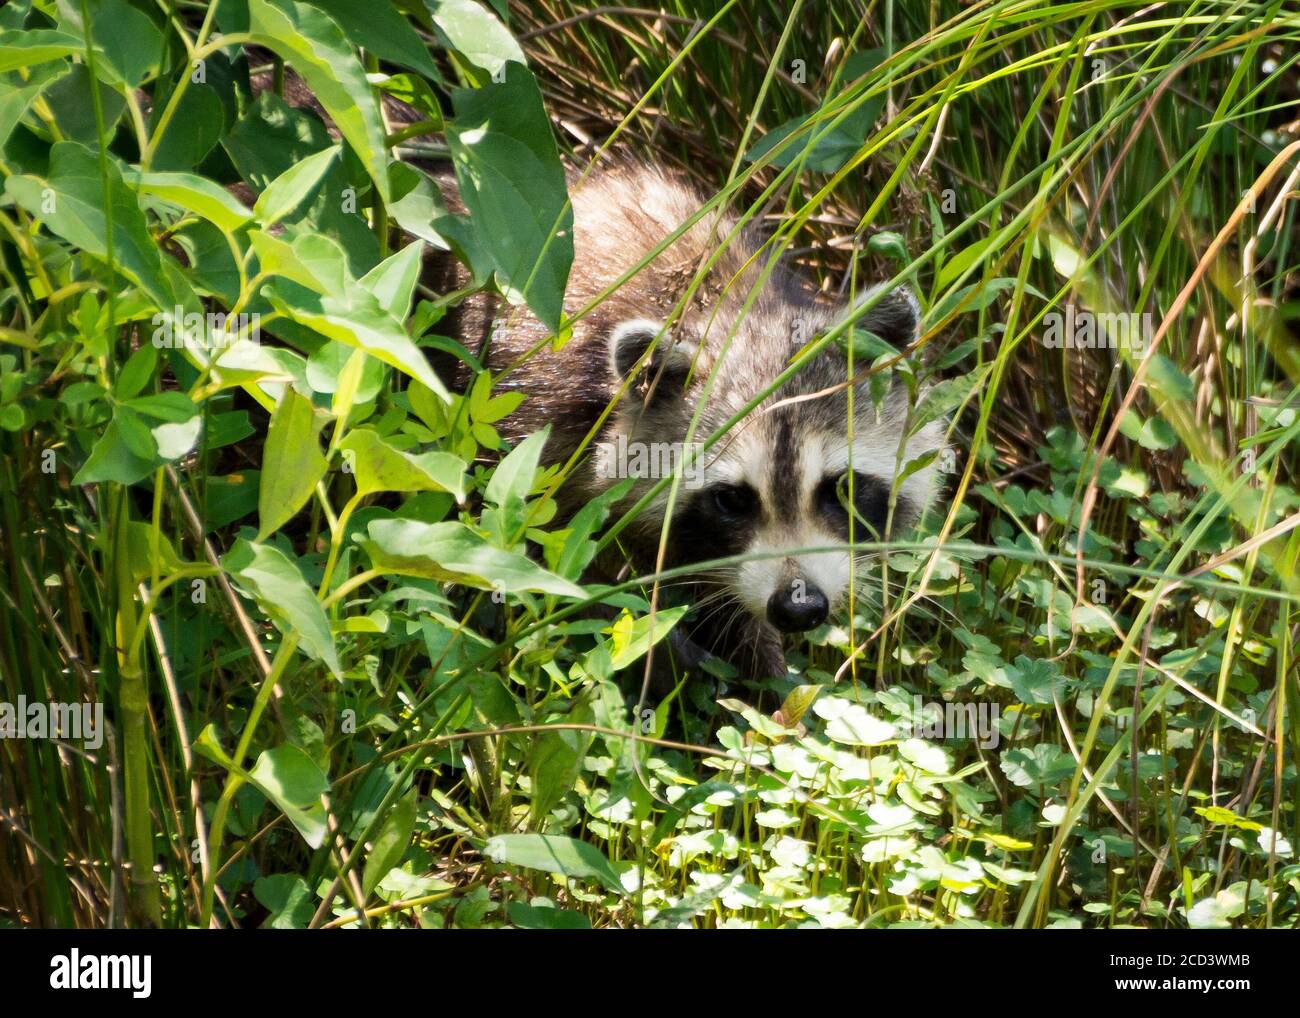 Un mapache joven tímido pero inquisitivo emerge de la hierba larga y el sotobosque en busca de su próxima comida. Foto de stock